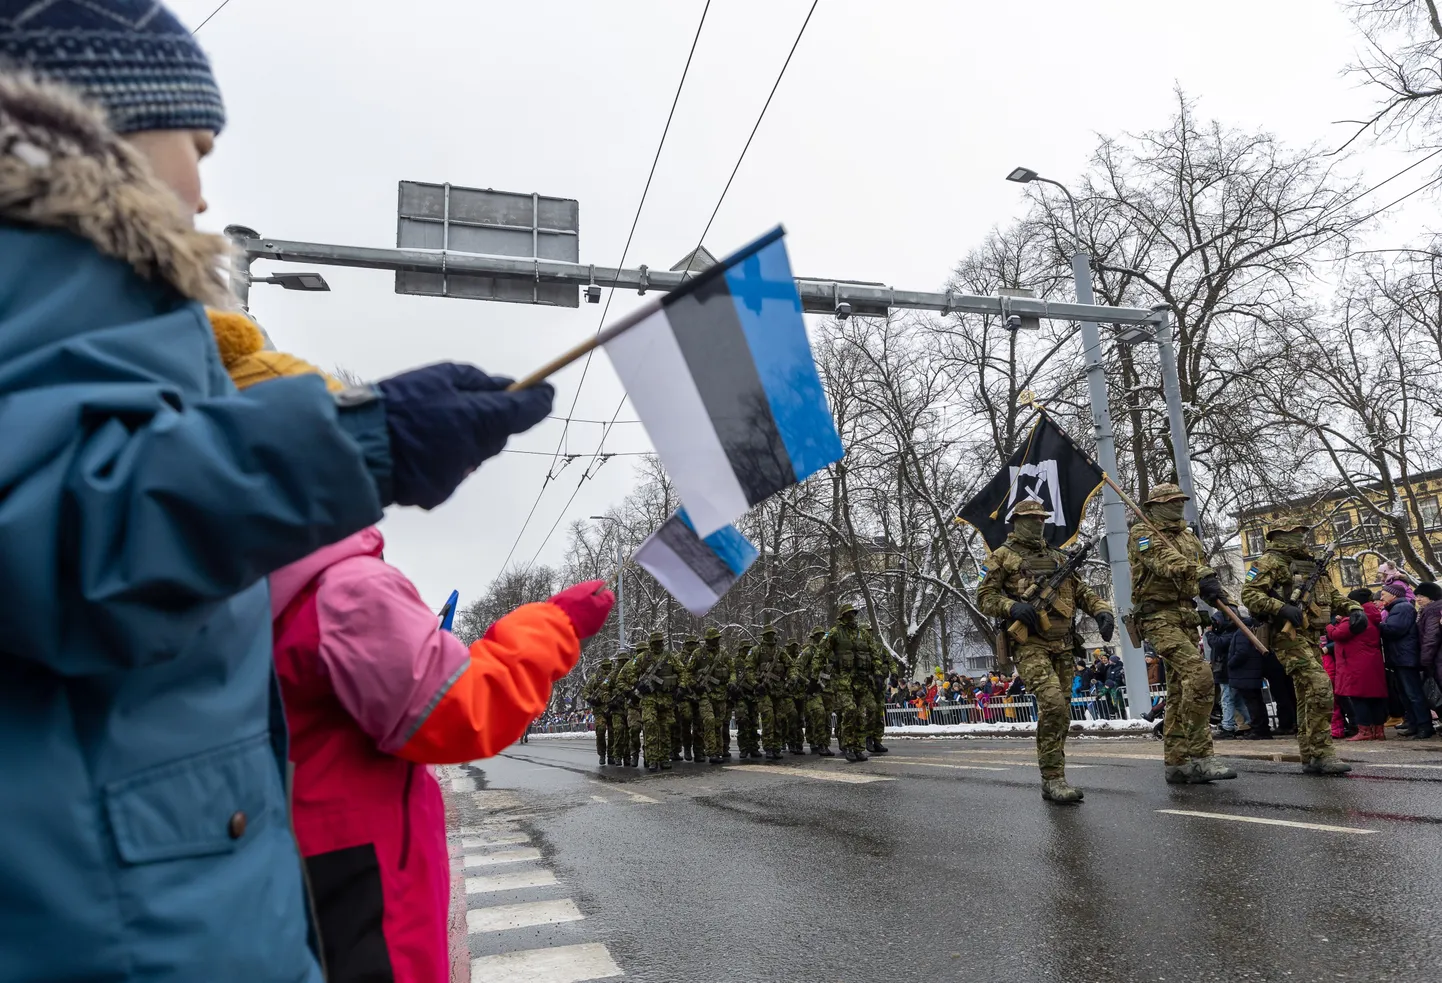 Mullune kaitseväe paraad Tallinnas. Pildil erioperatsioonide väejuhatuse liputoimkond koos üksusega marssimas.